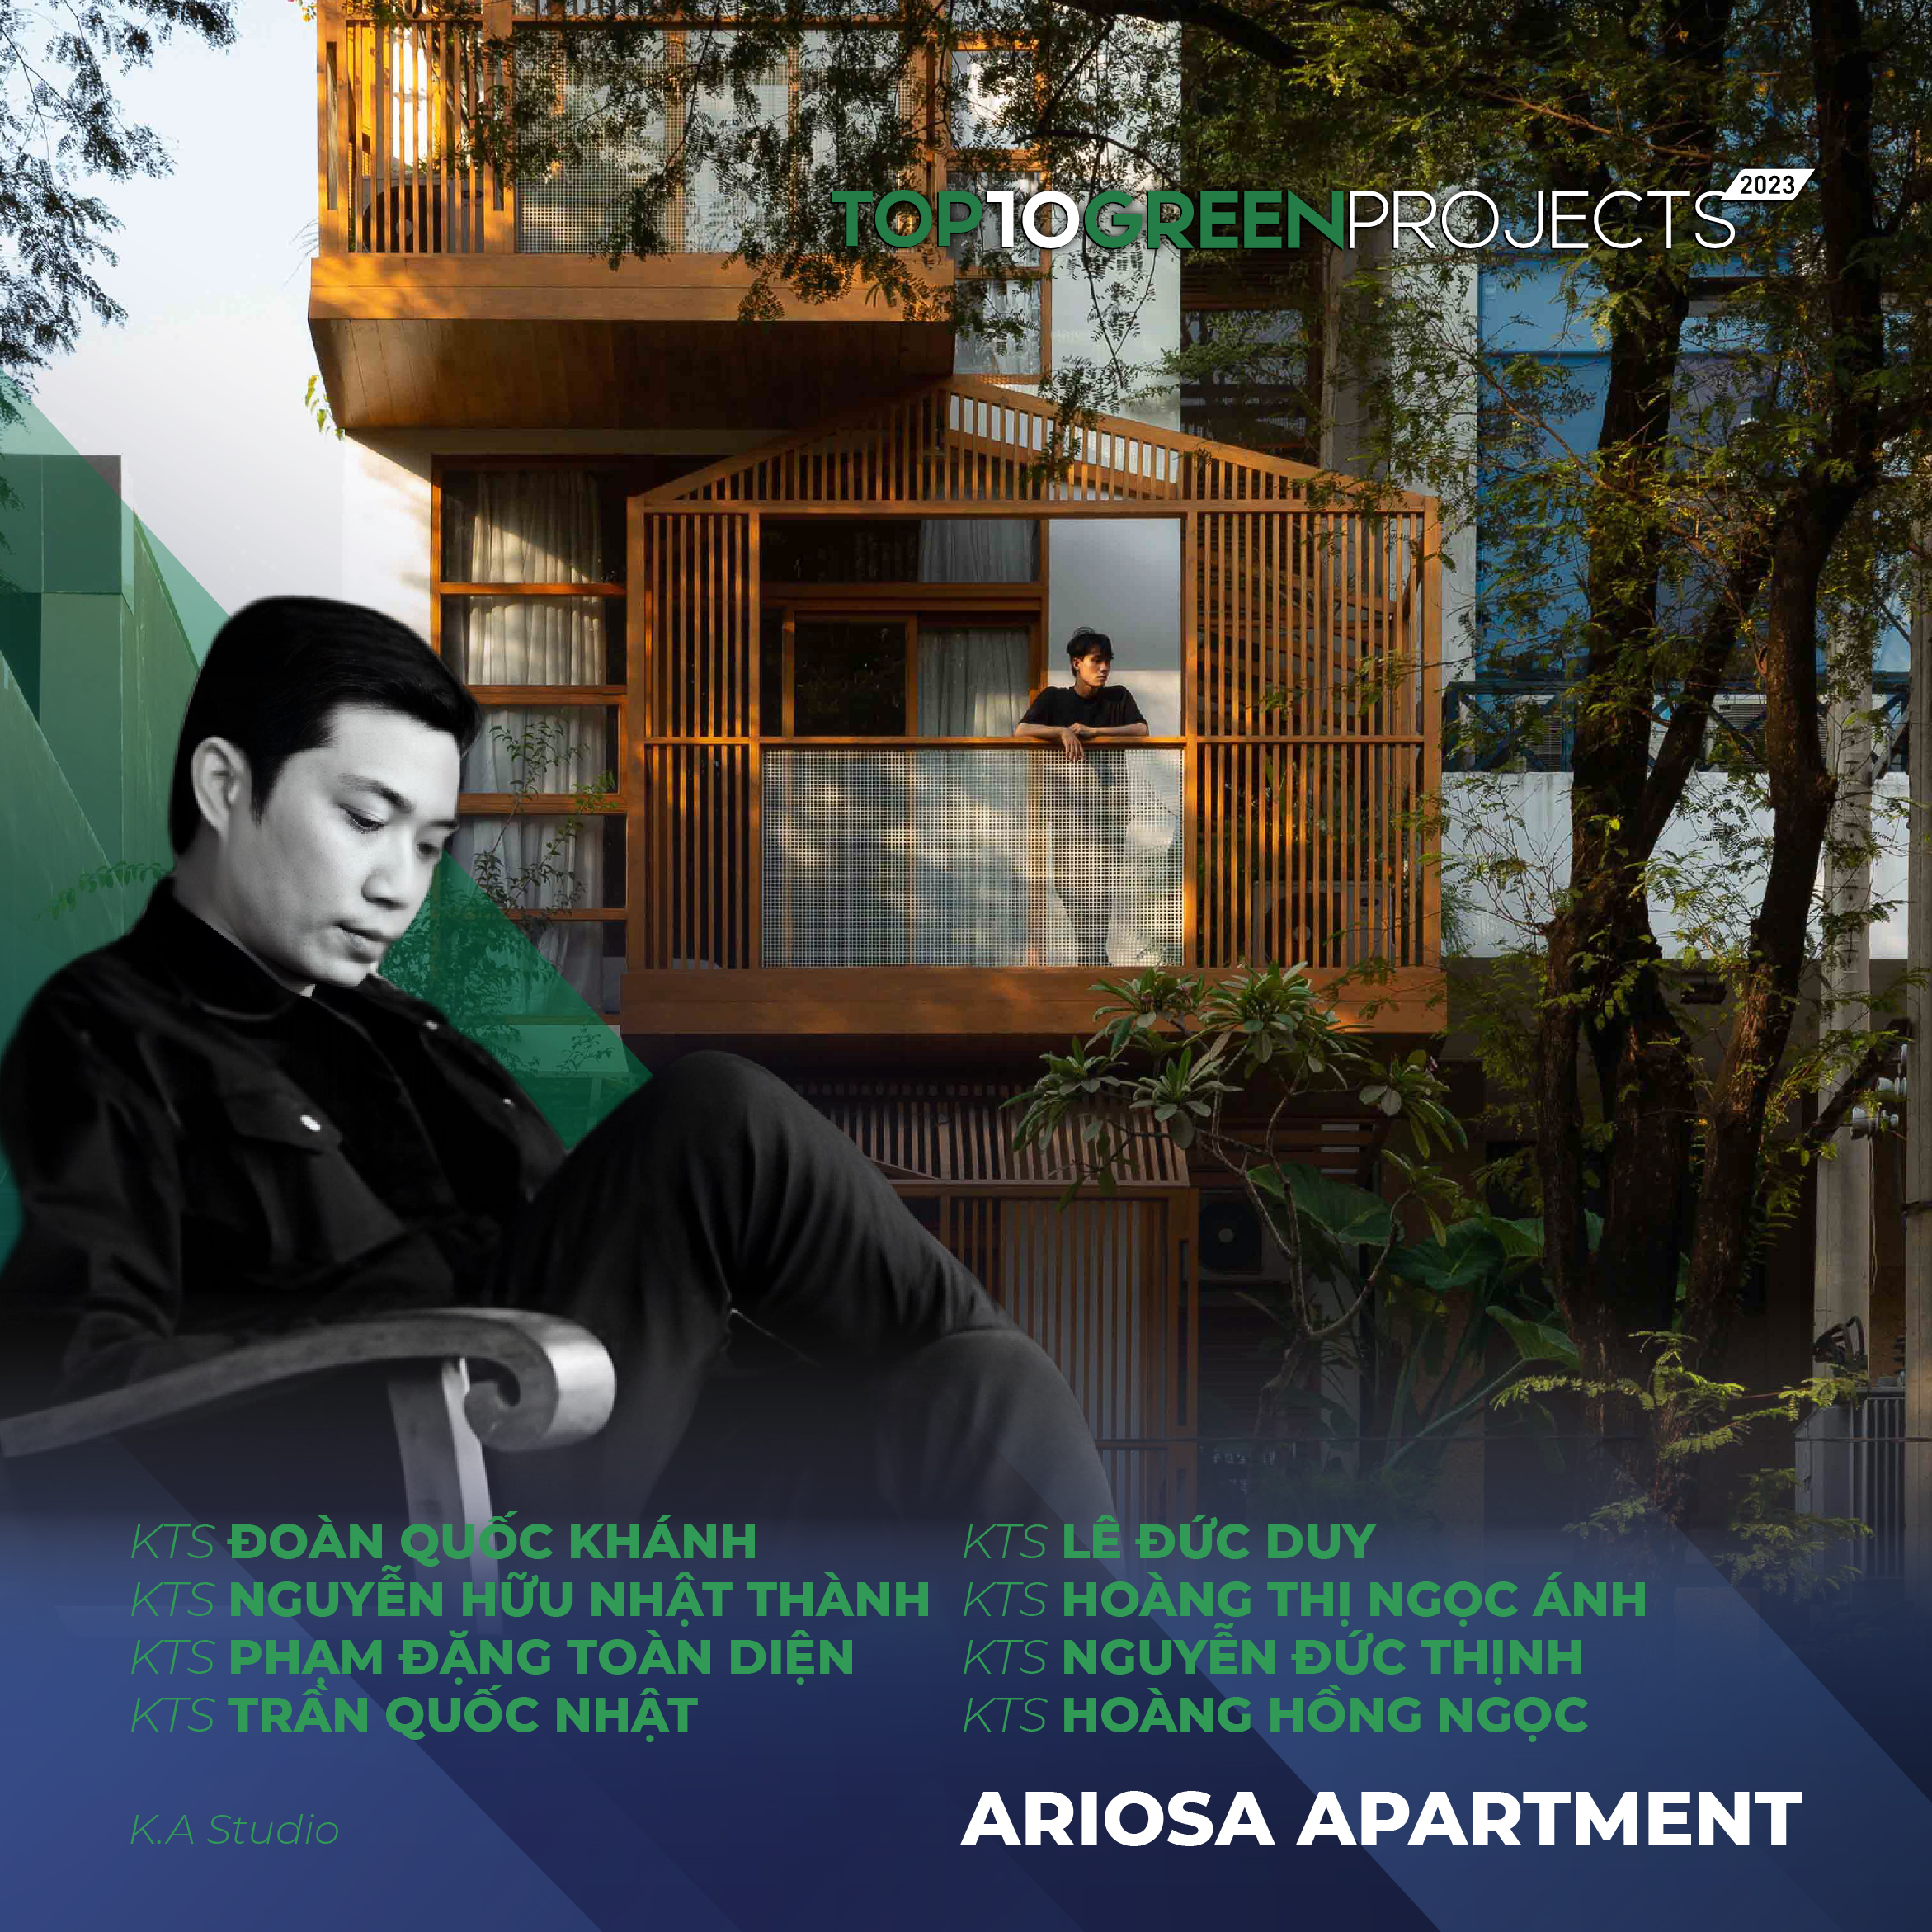 Ariosa Apartment